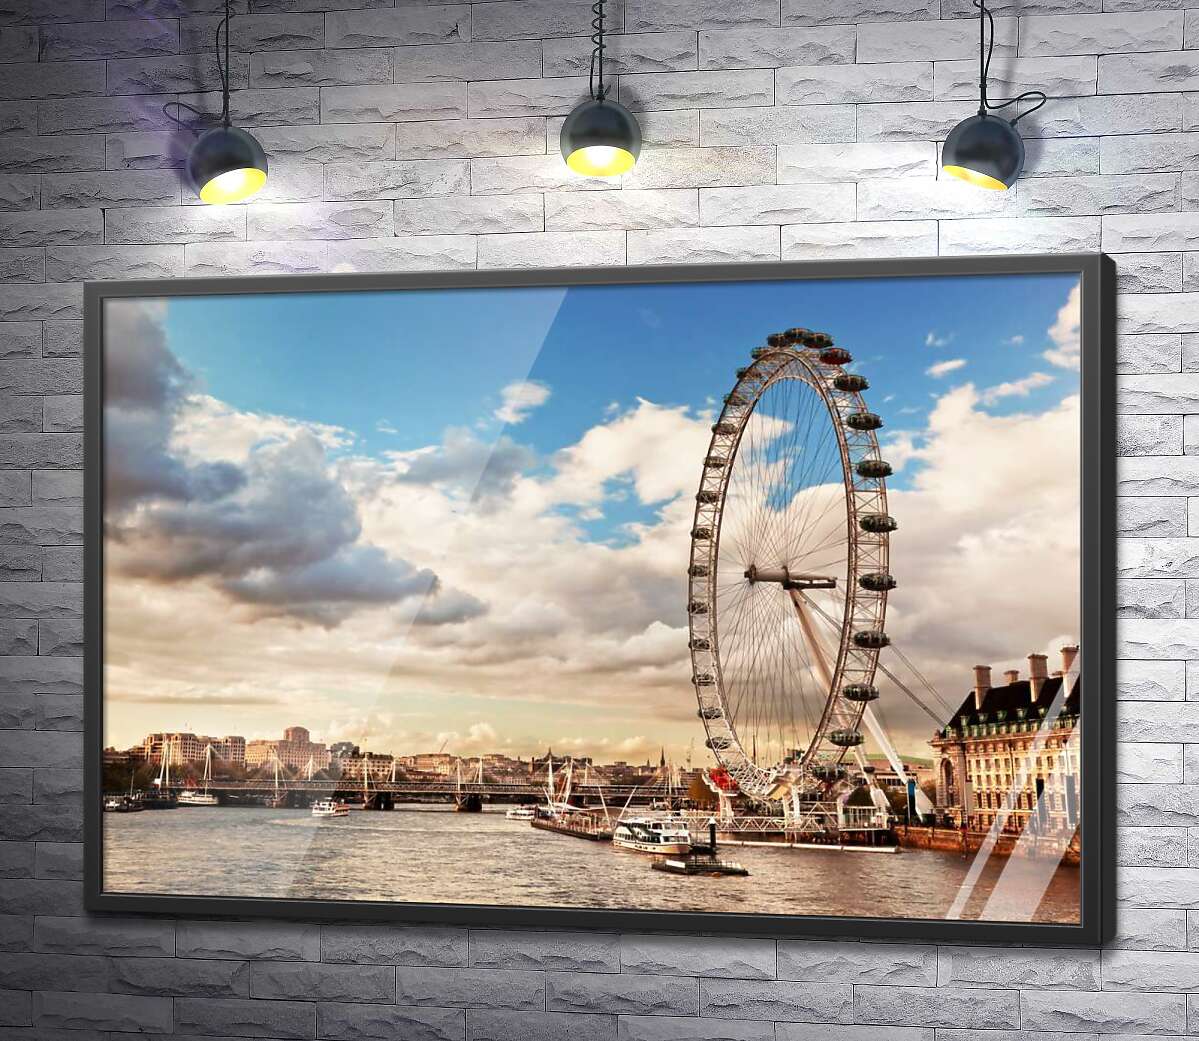 постер Колесо обозрения "Лондонский глаз" (London eye) нависло над водами Темзы